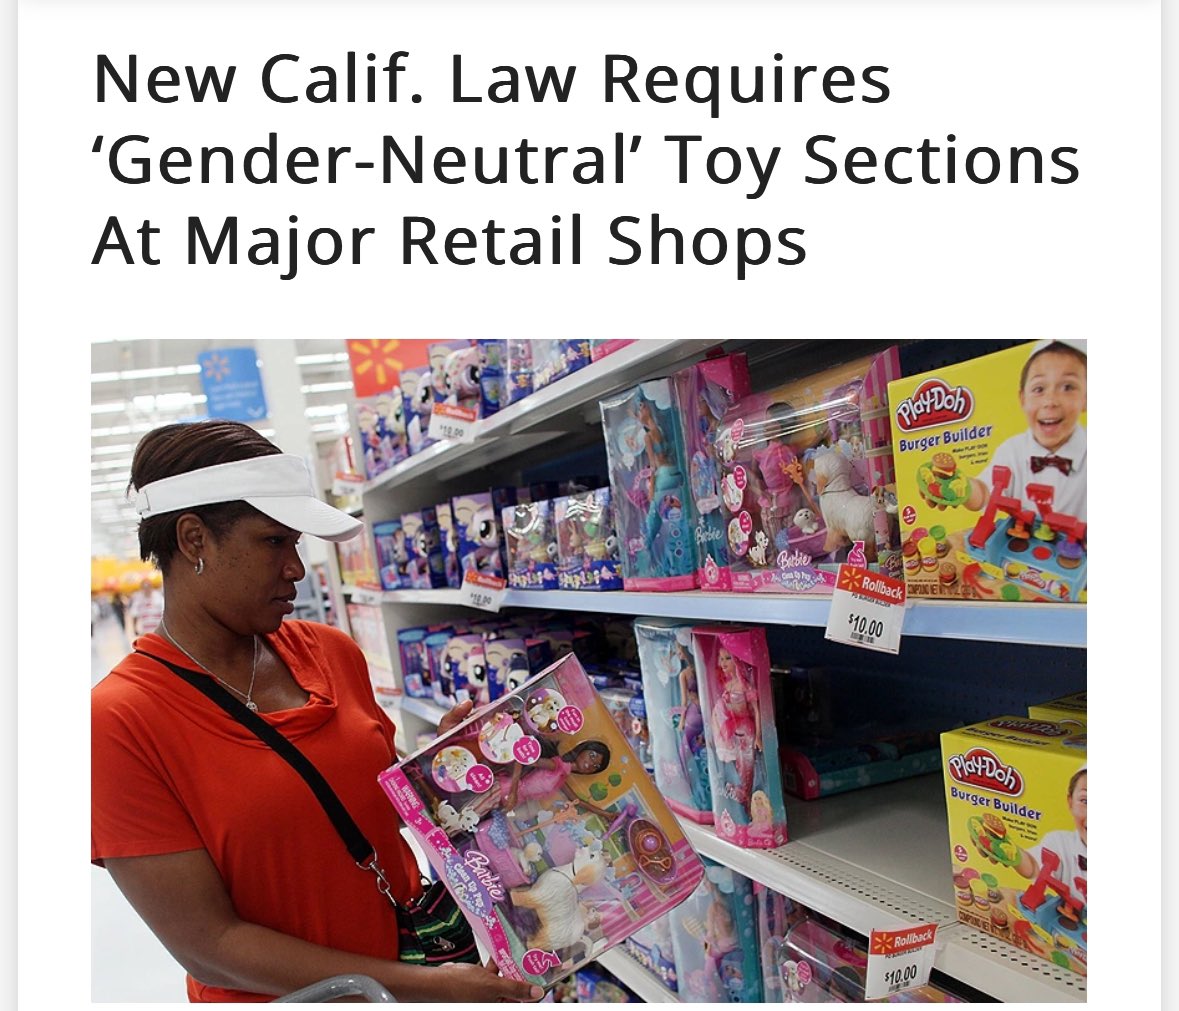 加州新法要求 大商场要设“中性”玩具区